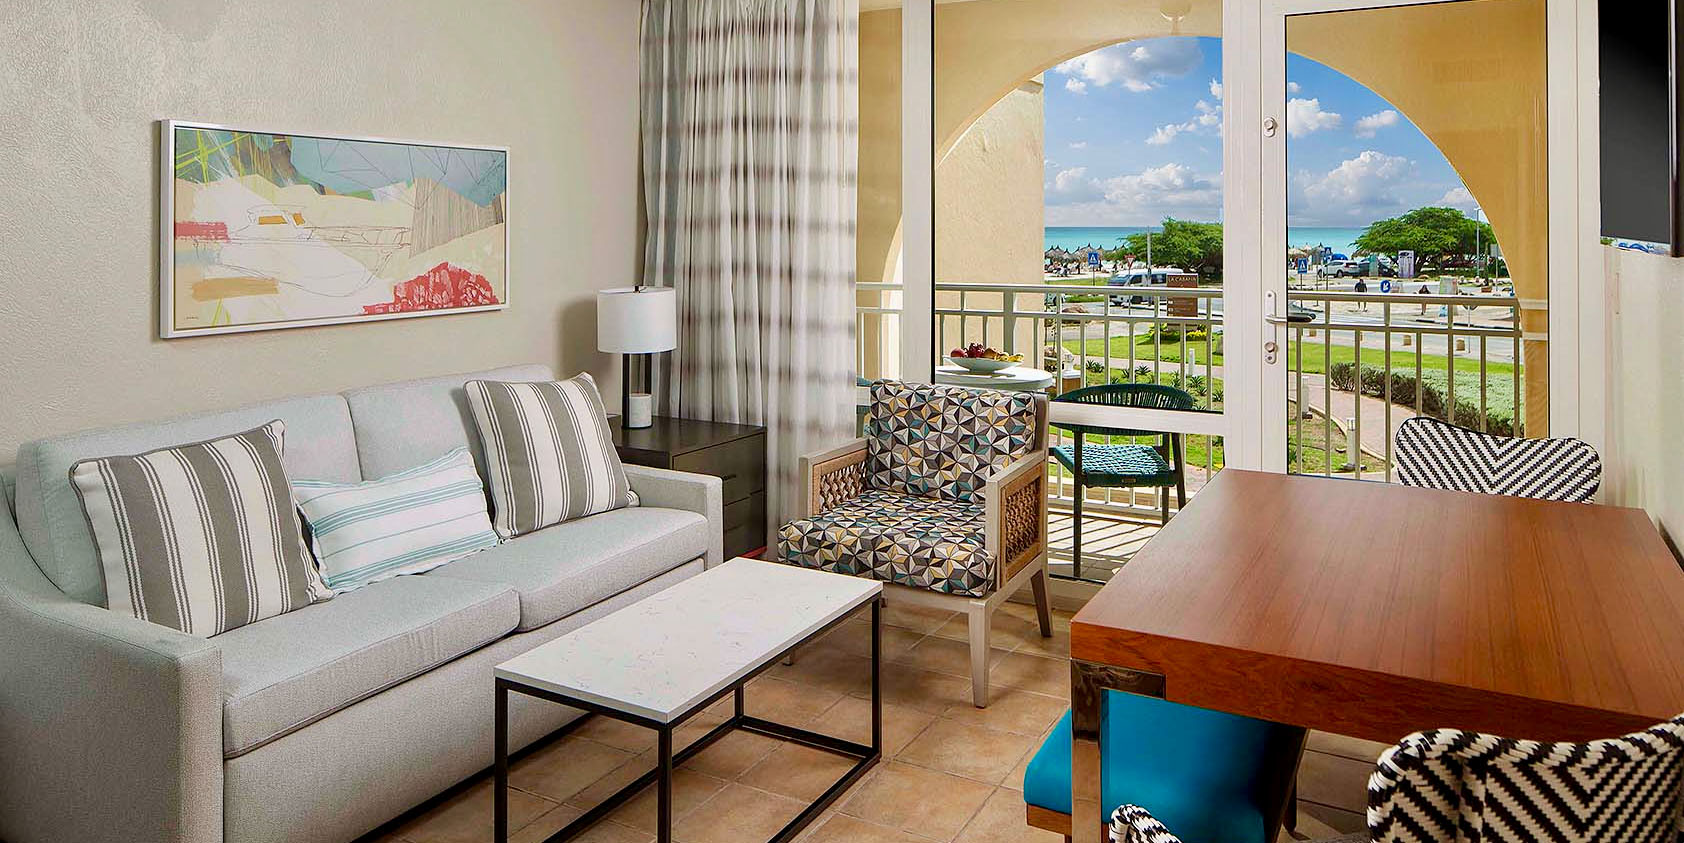 Interior_Slider-2bedrooms - Hotel Cabana